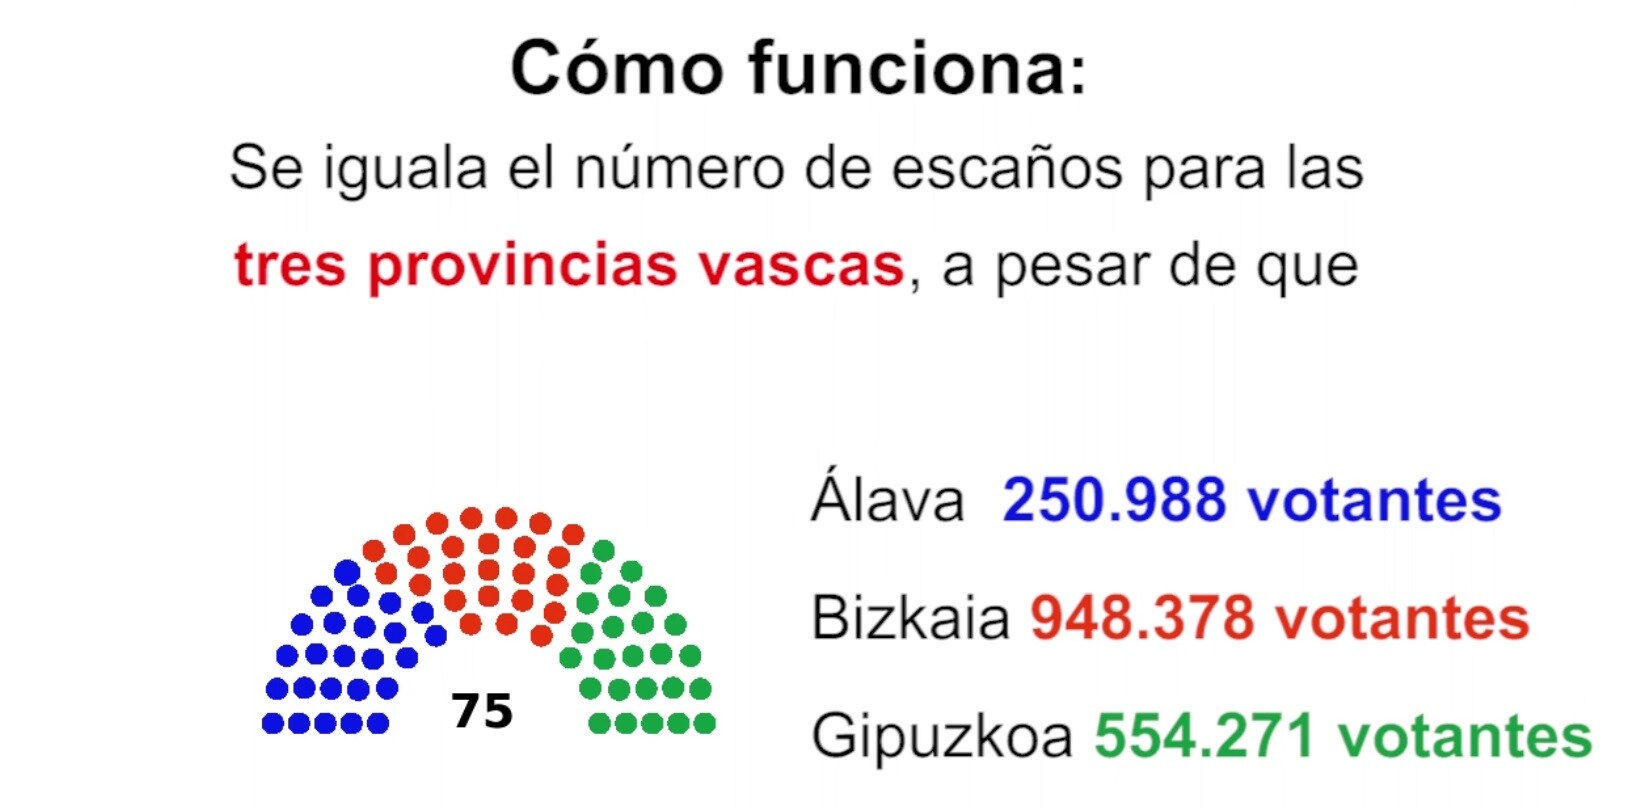 ¿Cómo funciona el sistema electoral en Euskadi?